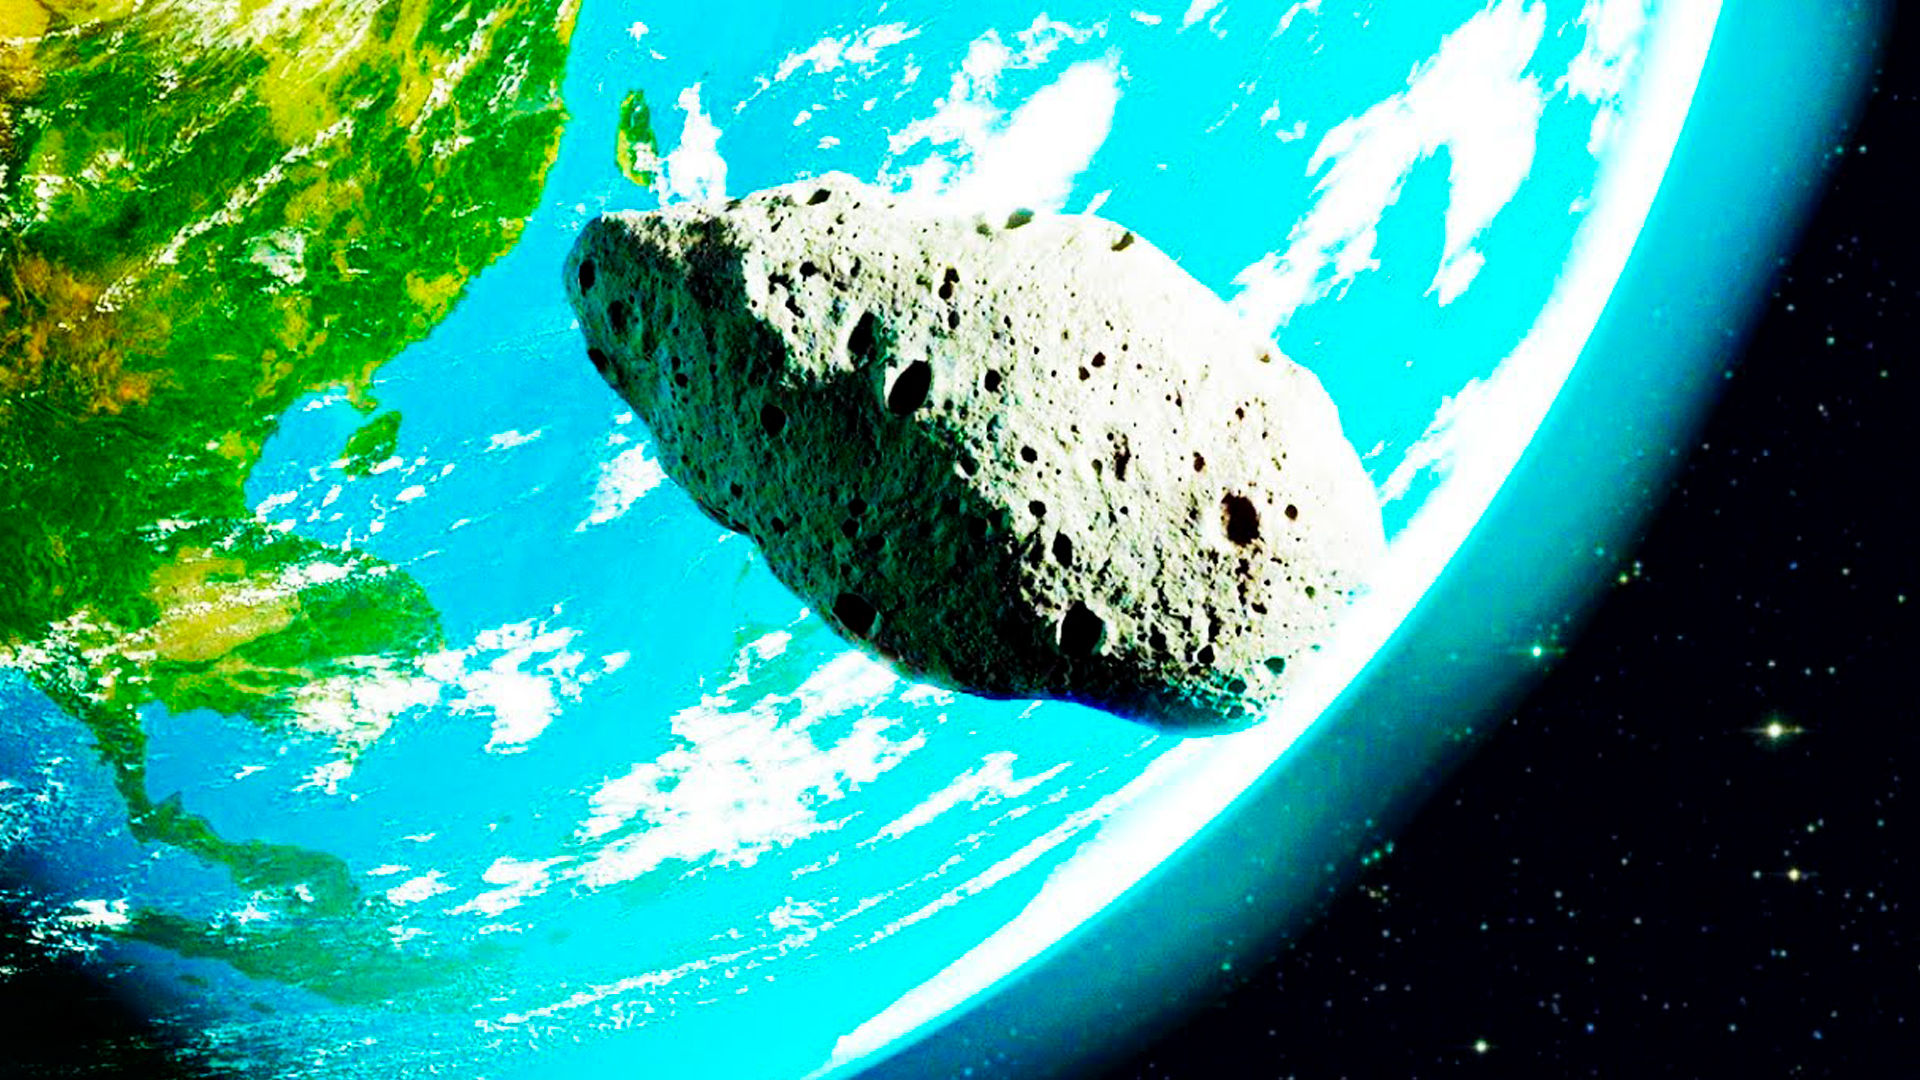 Астероидный бум